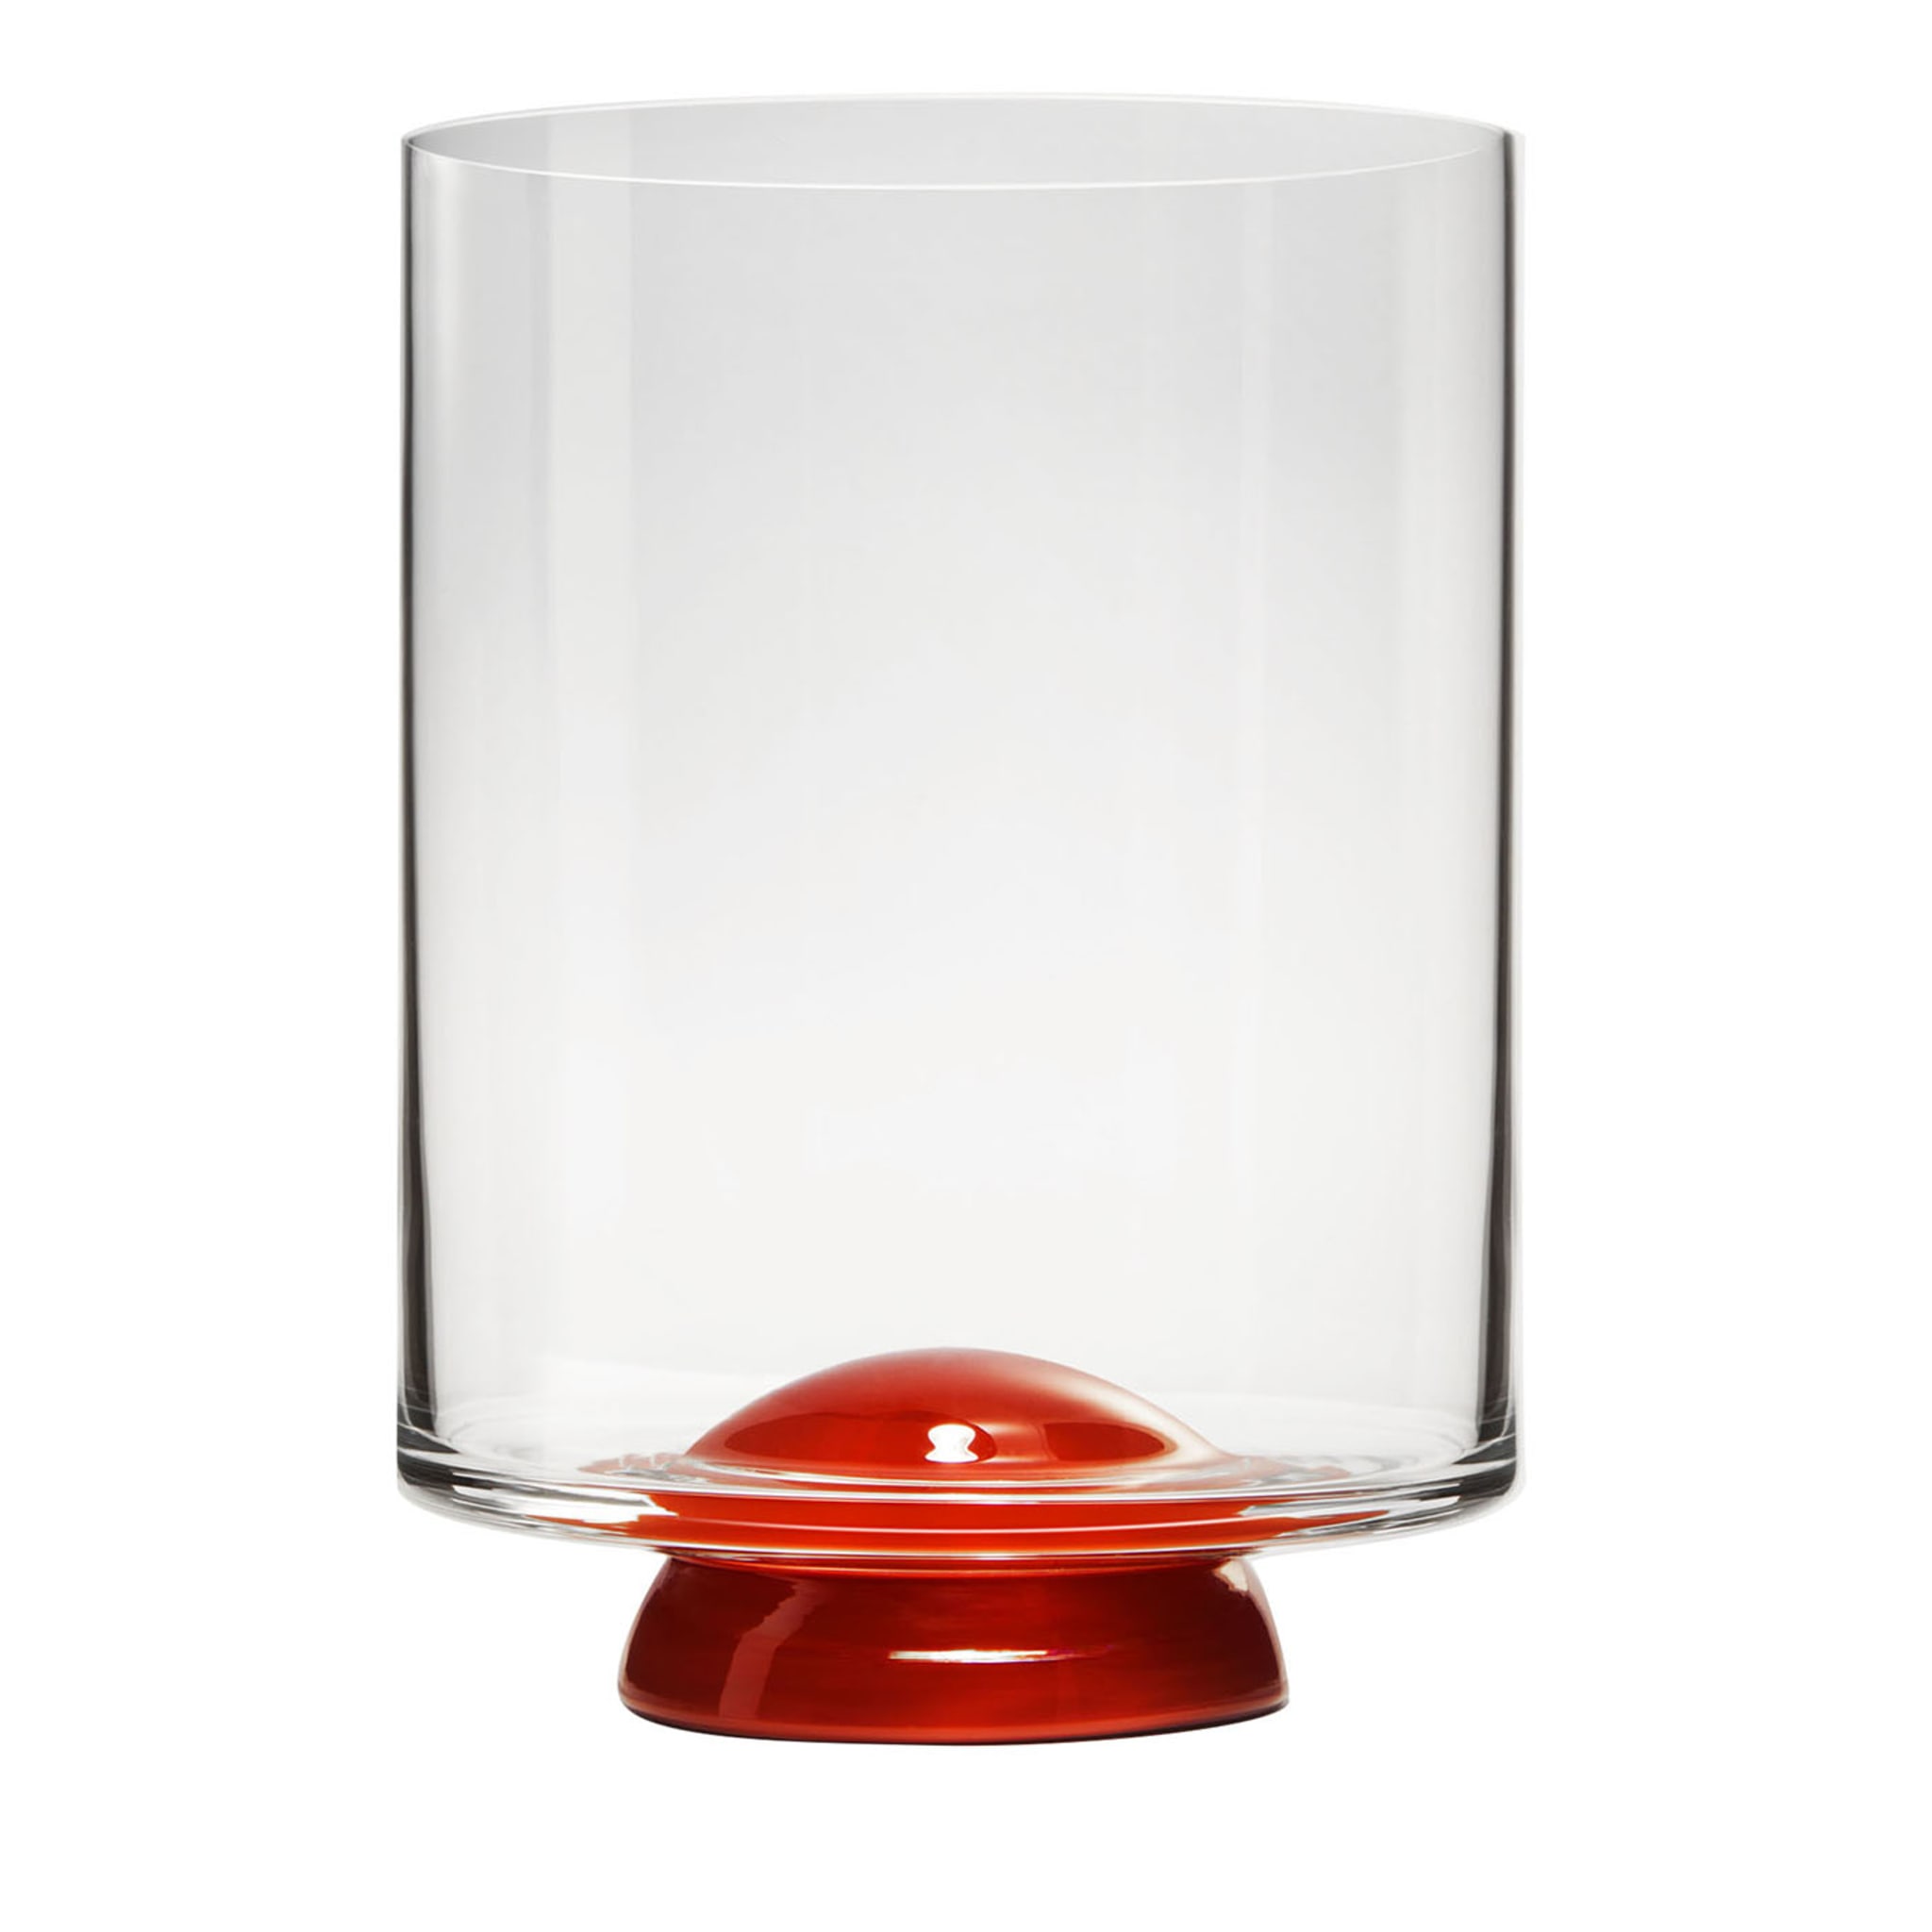 Punto rosso e vetro trasparente di Giovanni Patalano - Vista principale